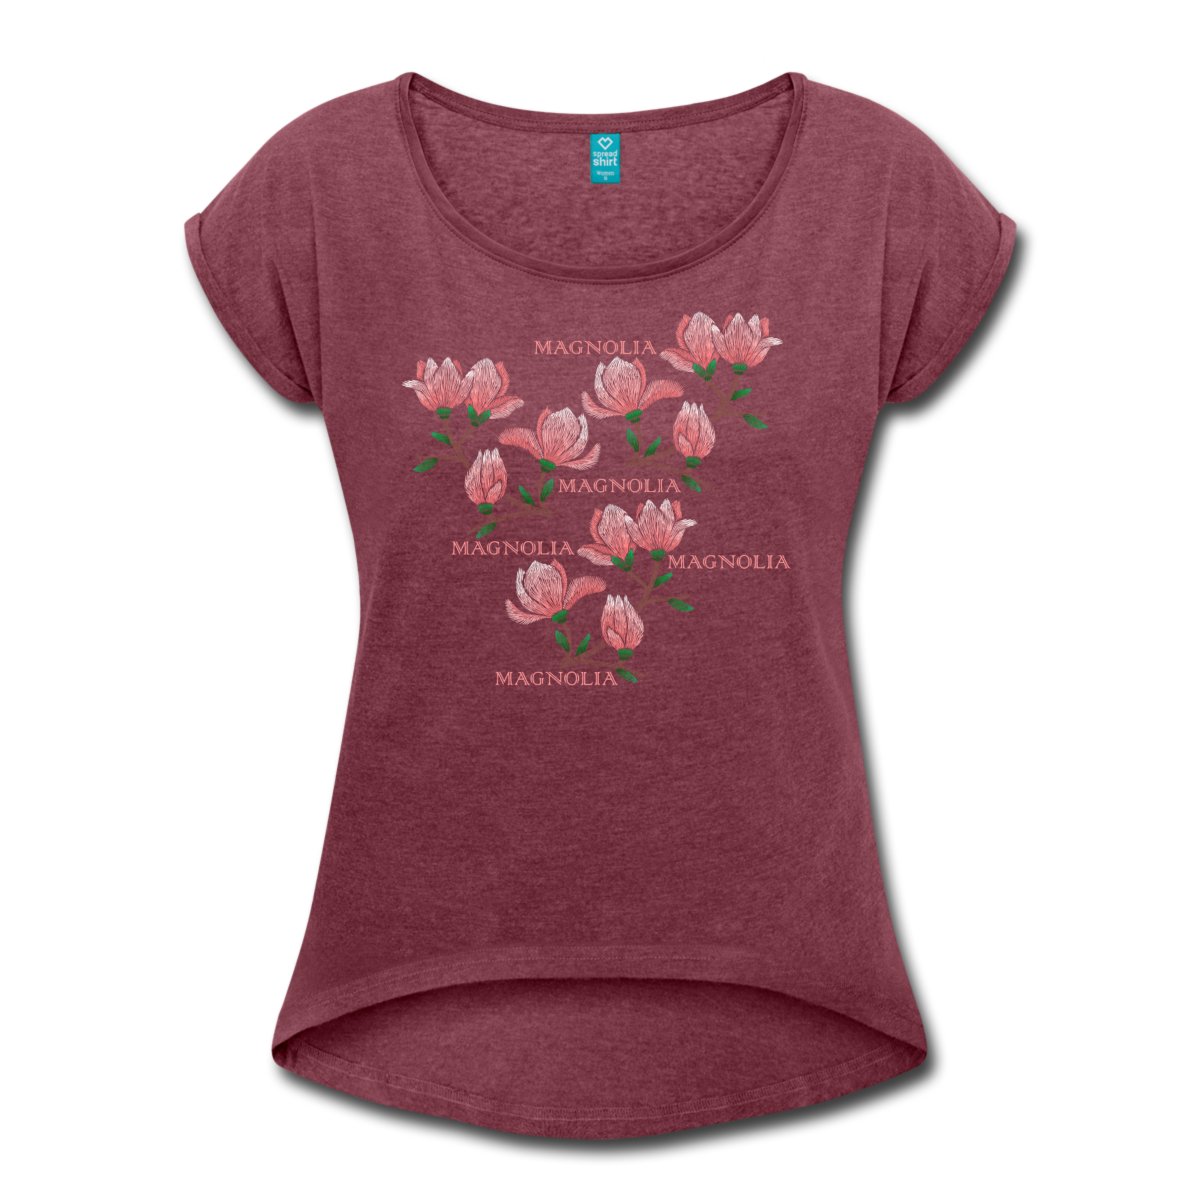 magnolia-t-shirt-med-upprullade-aermar-dam-v.jpg